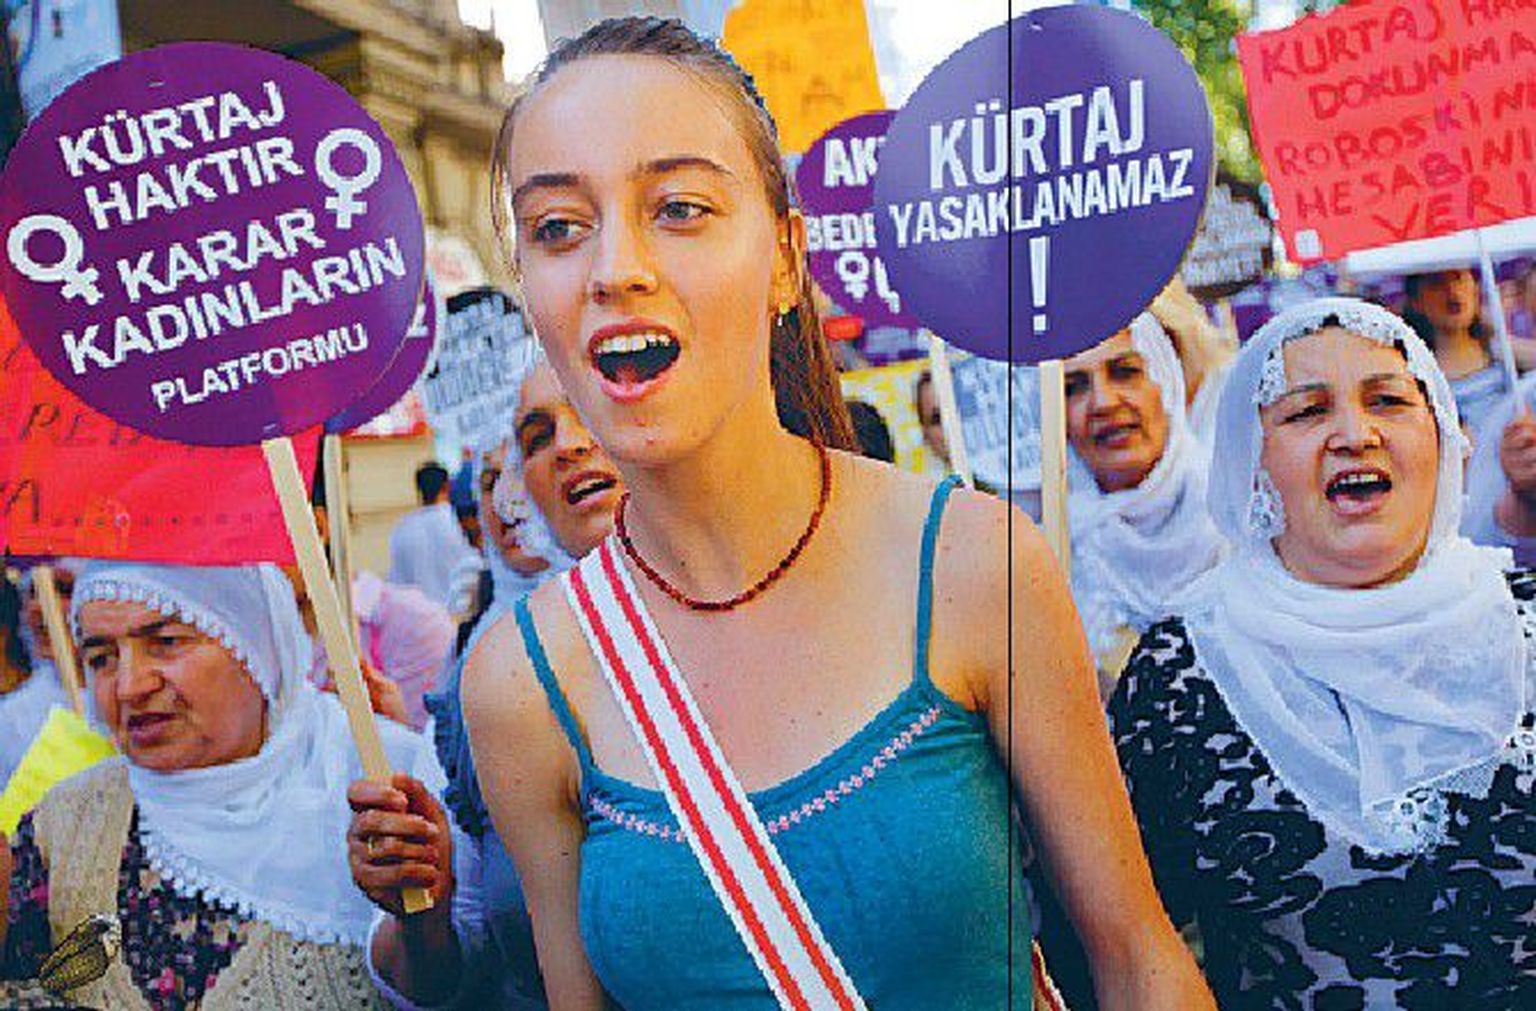 Istanbulis näeb nii õlapaeltega särgikuid kui burkasid: vasakul naised protestimas abordiõiguse piiramise vastu, paremal naised kurjustamas Iisraeliga.